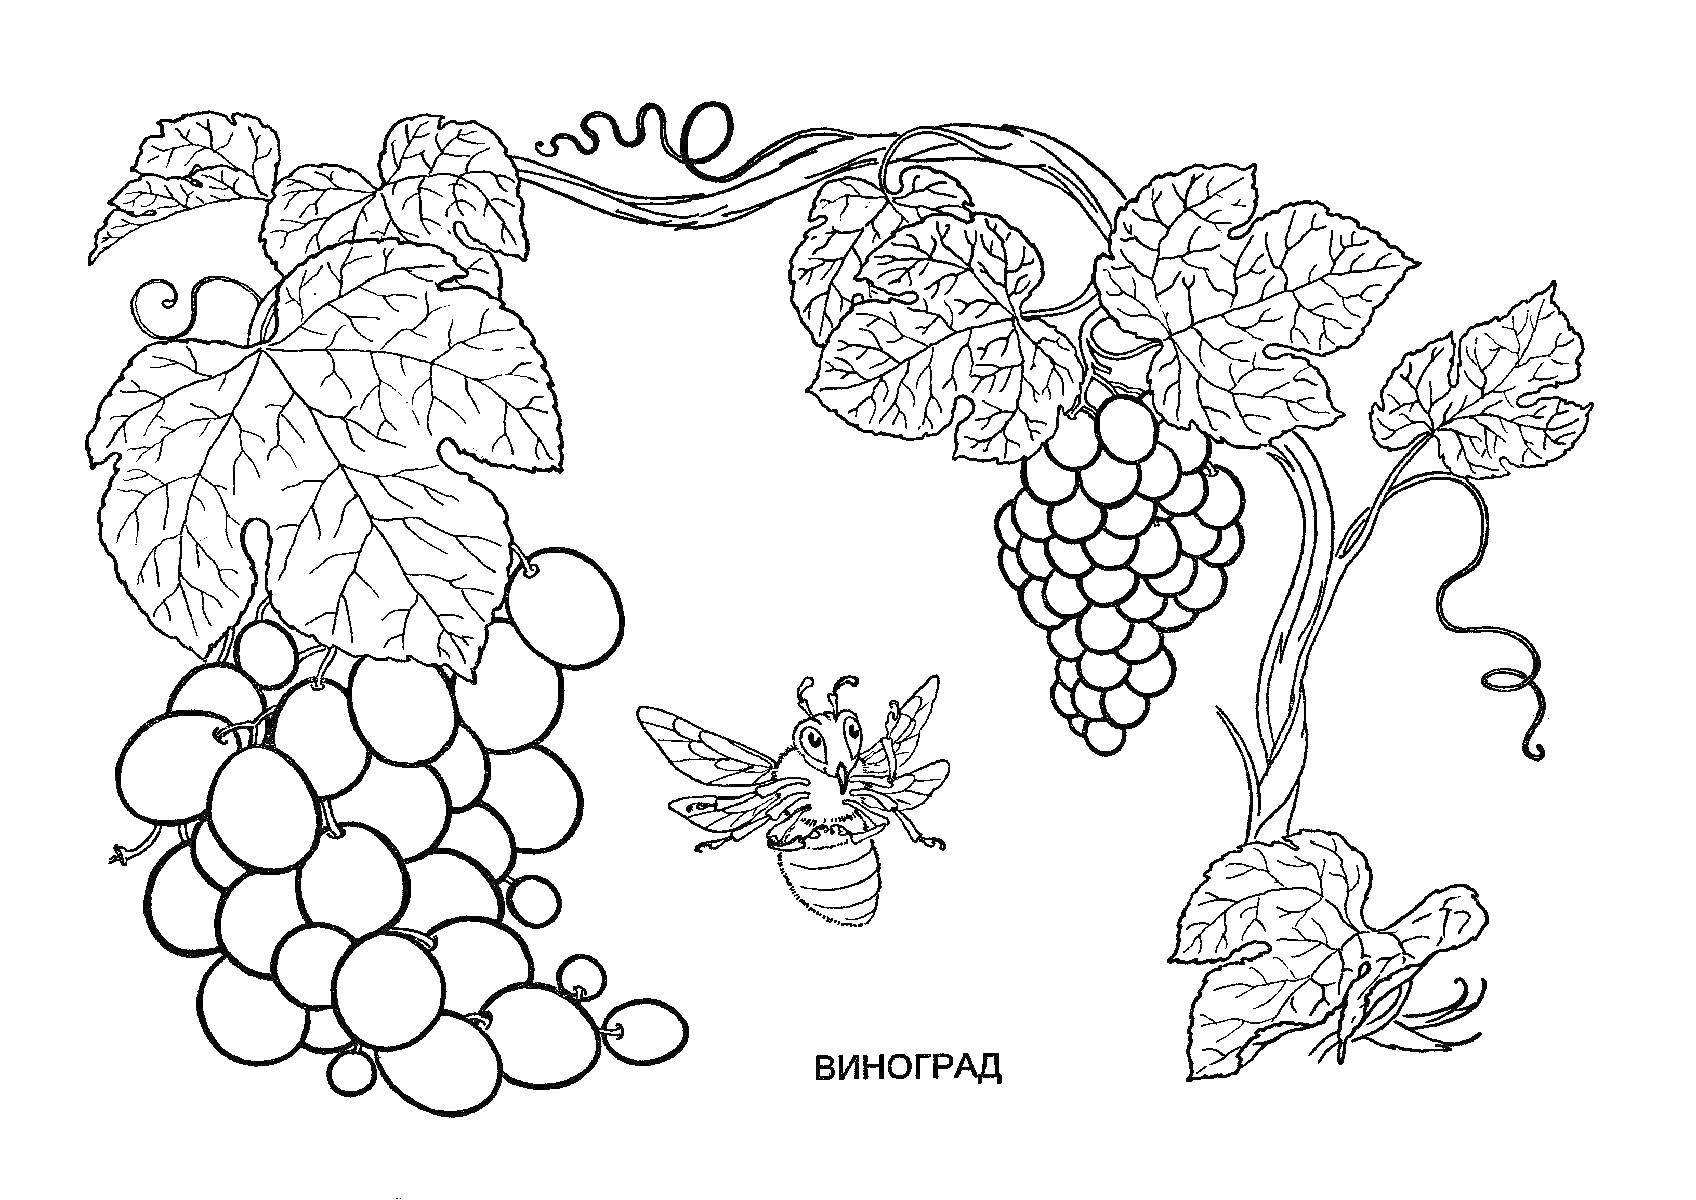 Виноградная лоза с гроздьями винограда и пчела